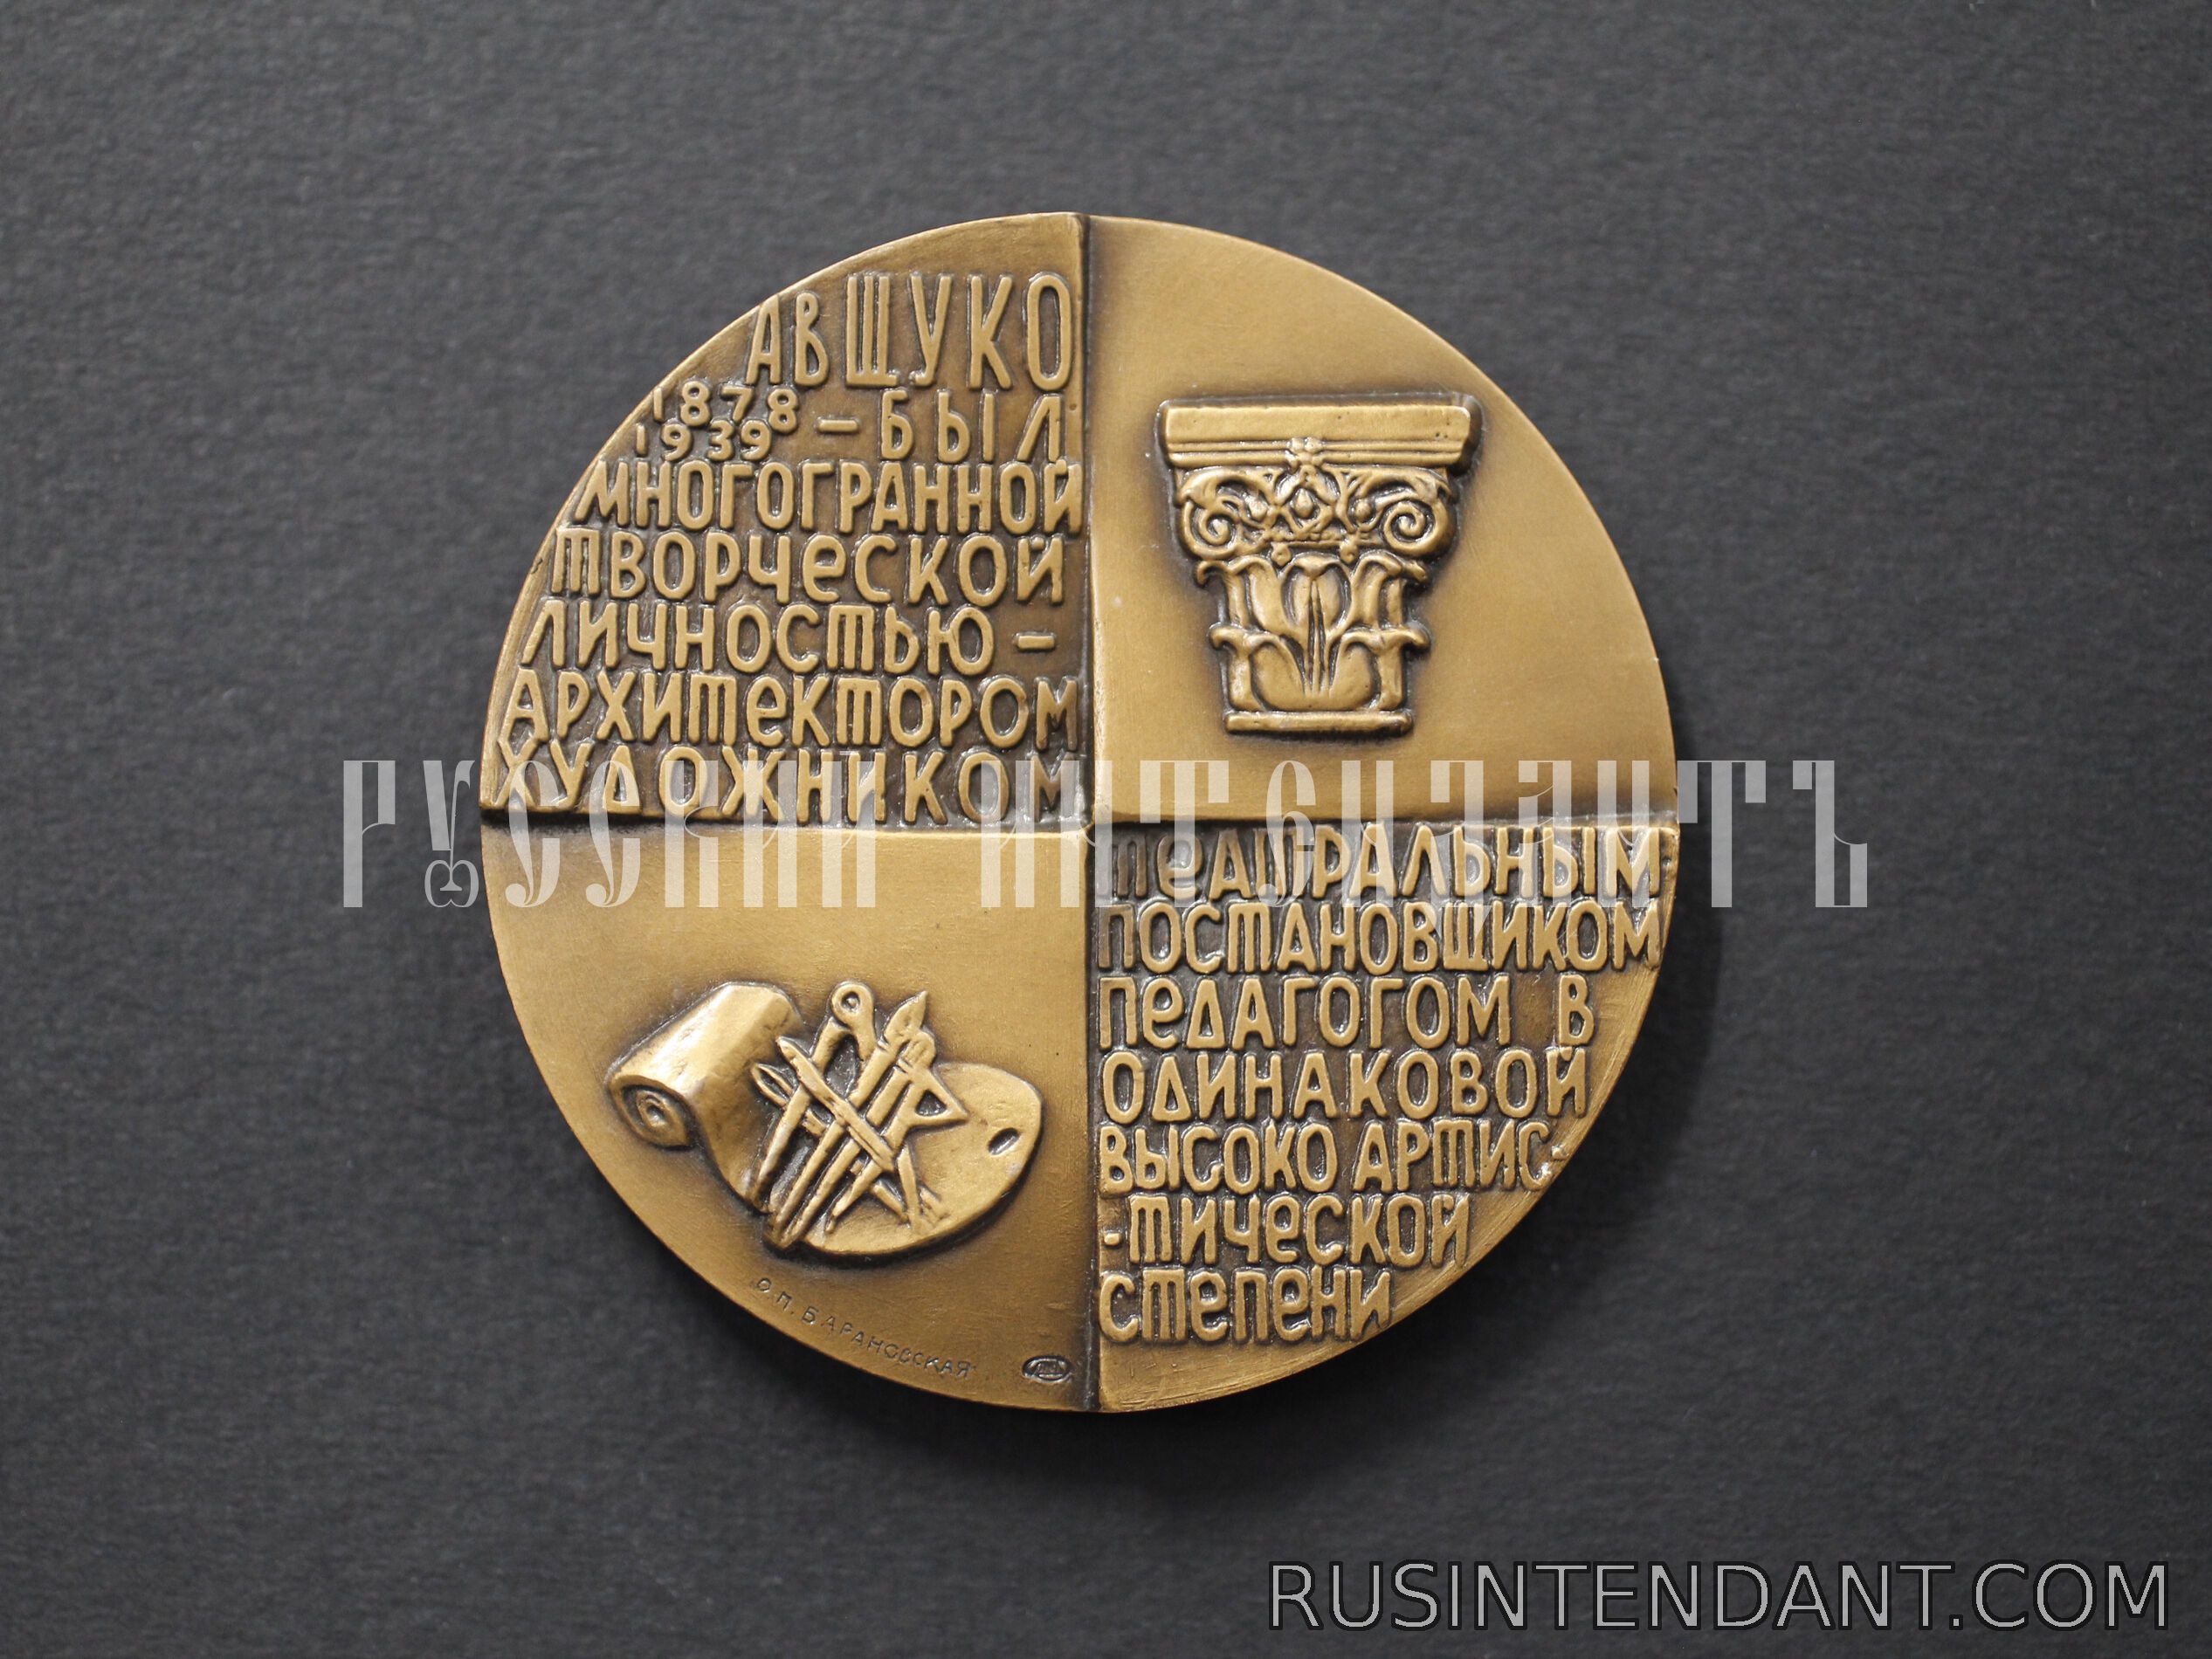 Фото 2: Настольная медаль «В.А. Щуко» 